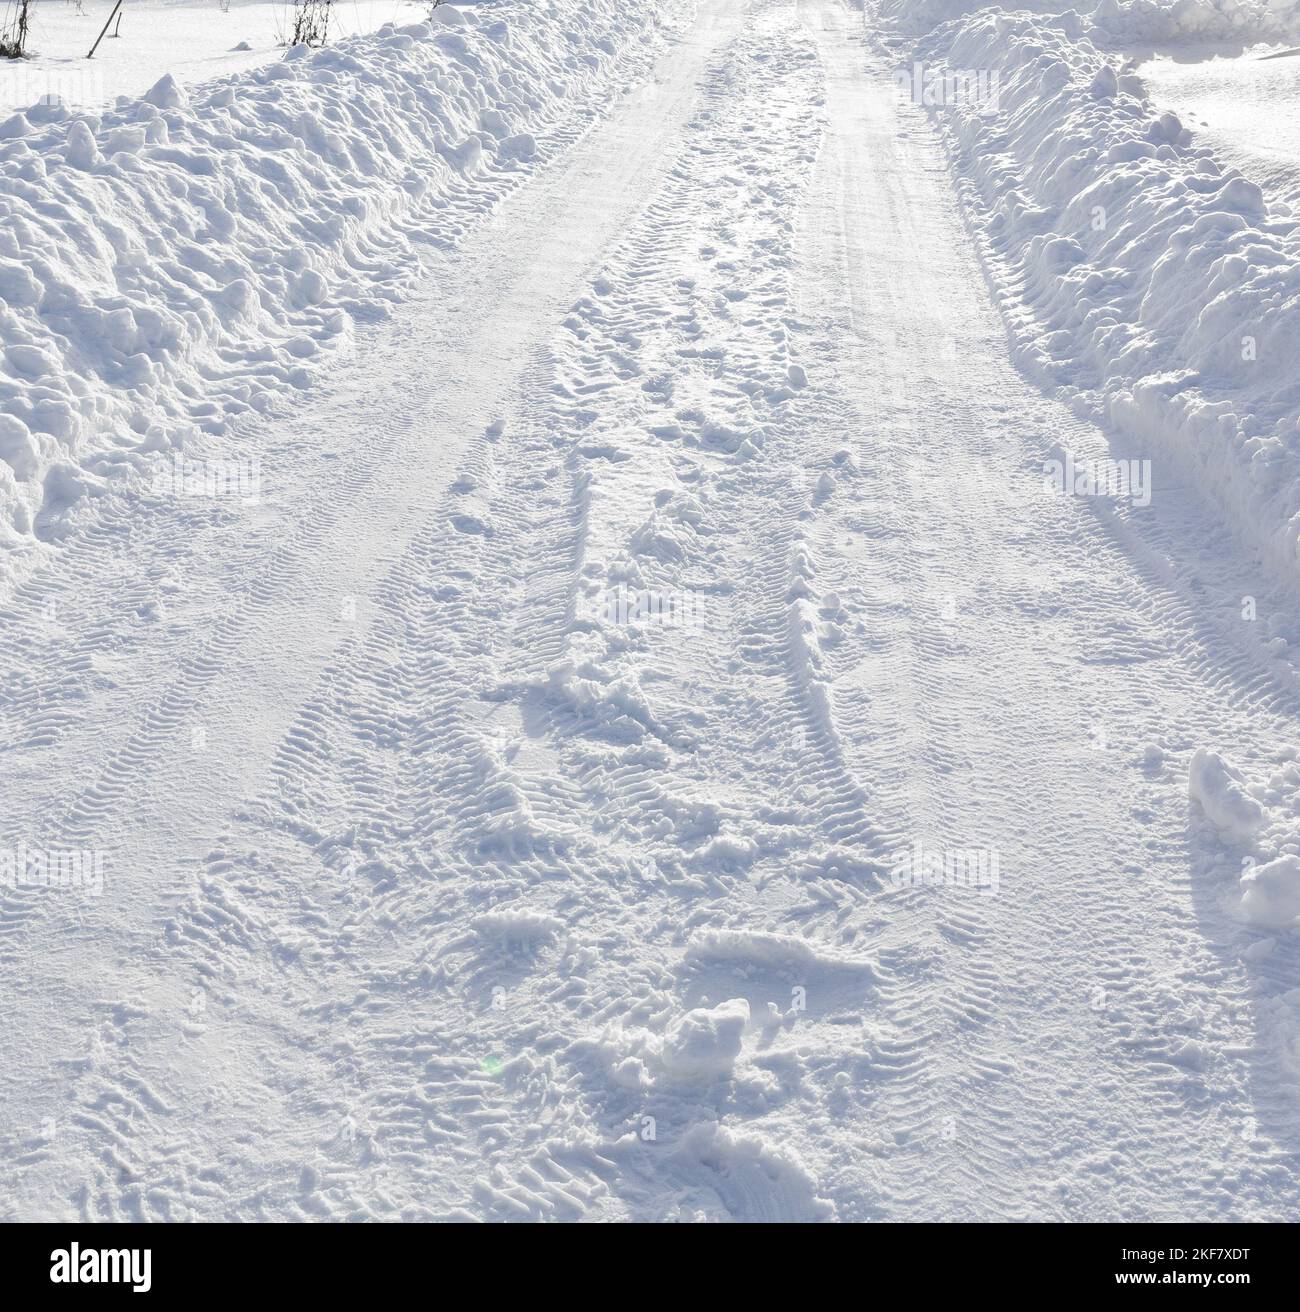 Carretera de invierno y nieve con heladas. Paisaje invernal Foto de stock